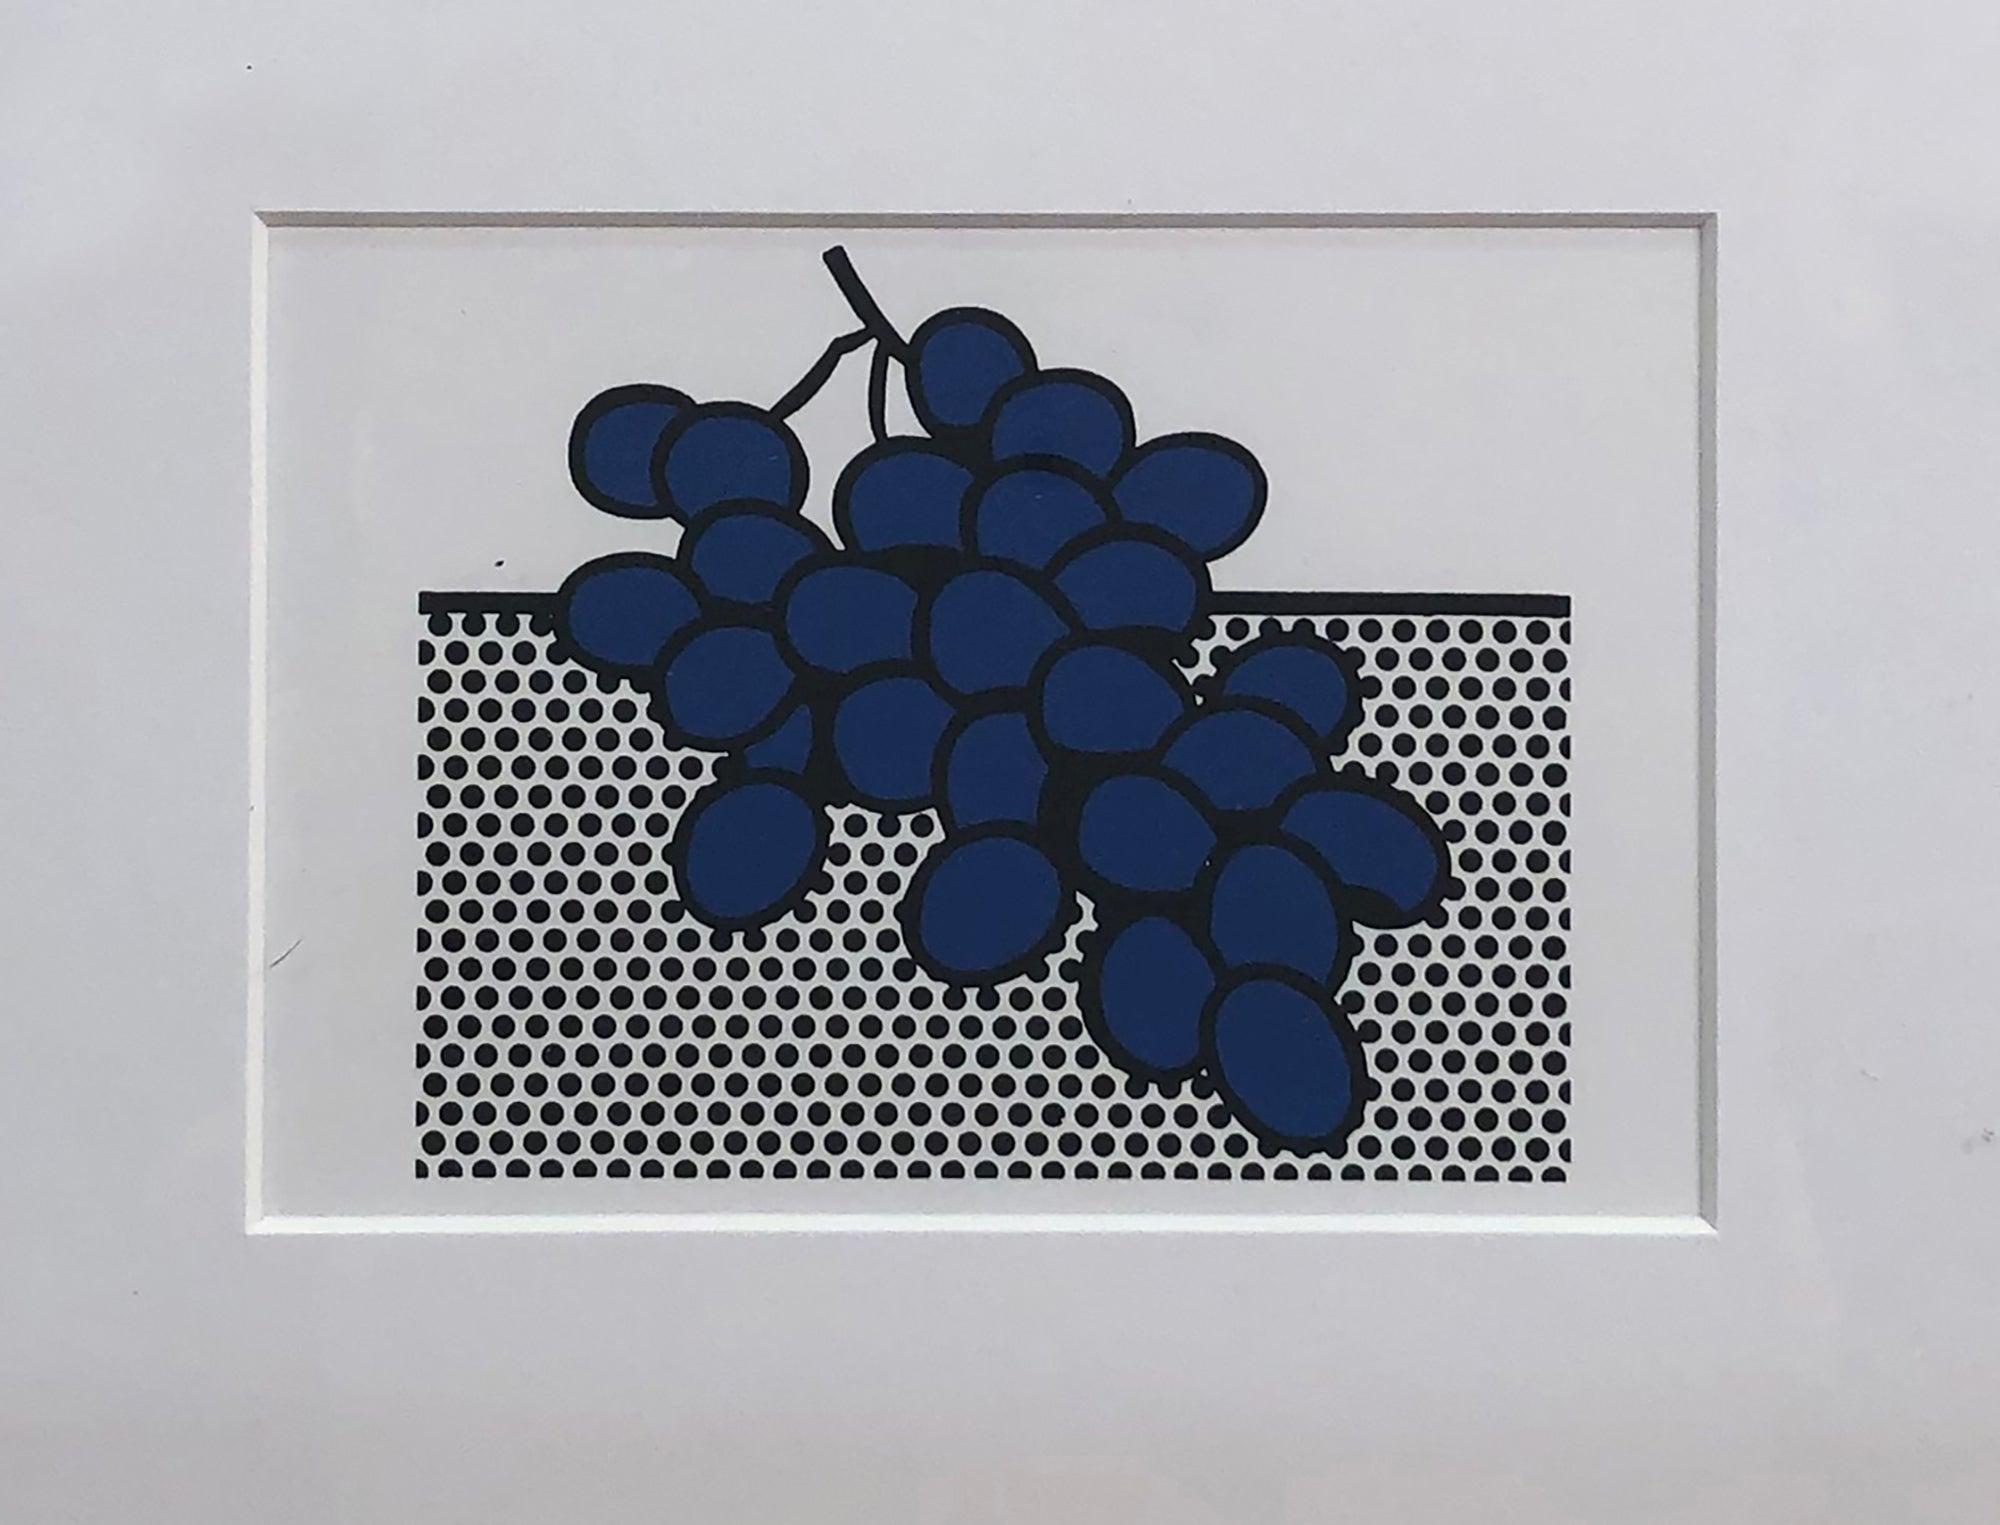 1972 Roy Lichtenstein 'Blue Grapes' Invitation FRAMED - Print by (after) Roy Lichtenstein